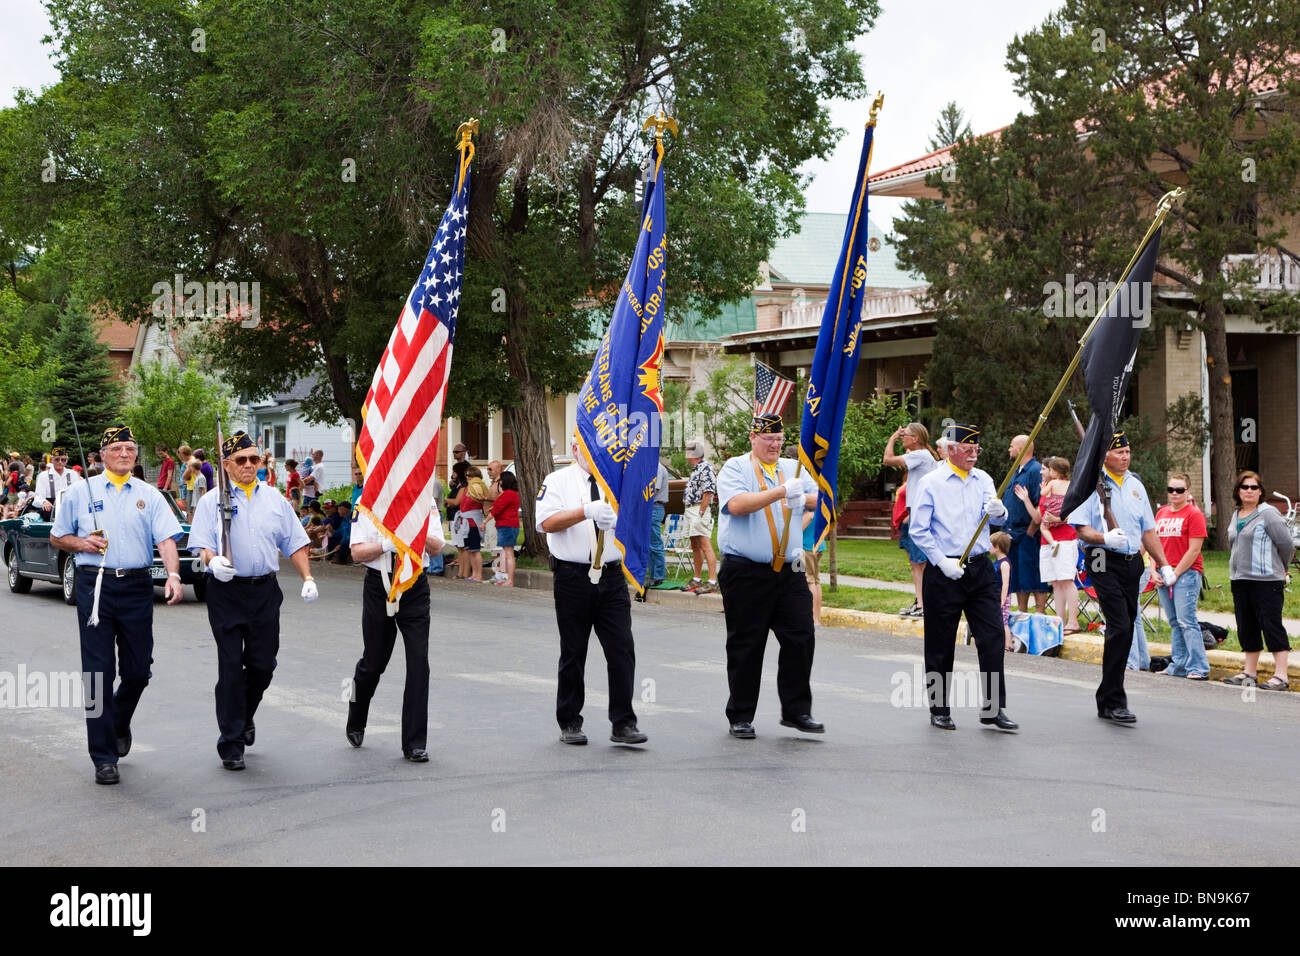 Les anciens combattants des guerres étrangères mars dans le color guard dans un défilé du 4 juillet dans la petite ville de montagne de Salida, Colorado, USA Banque D'Images